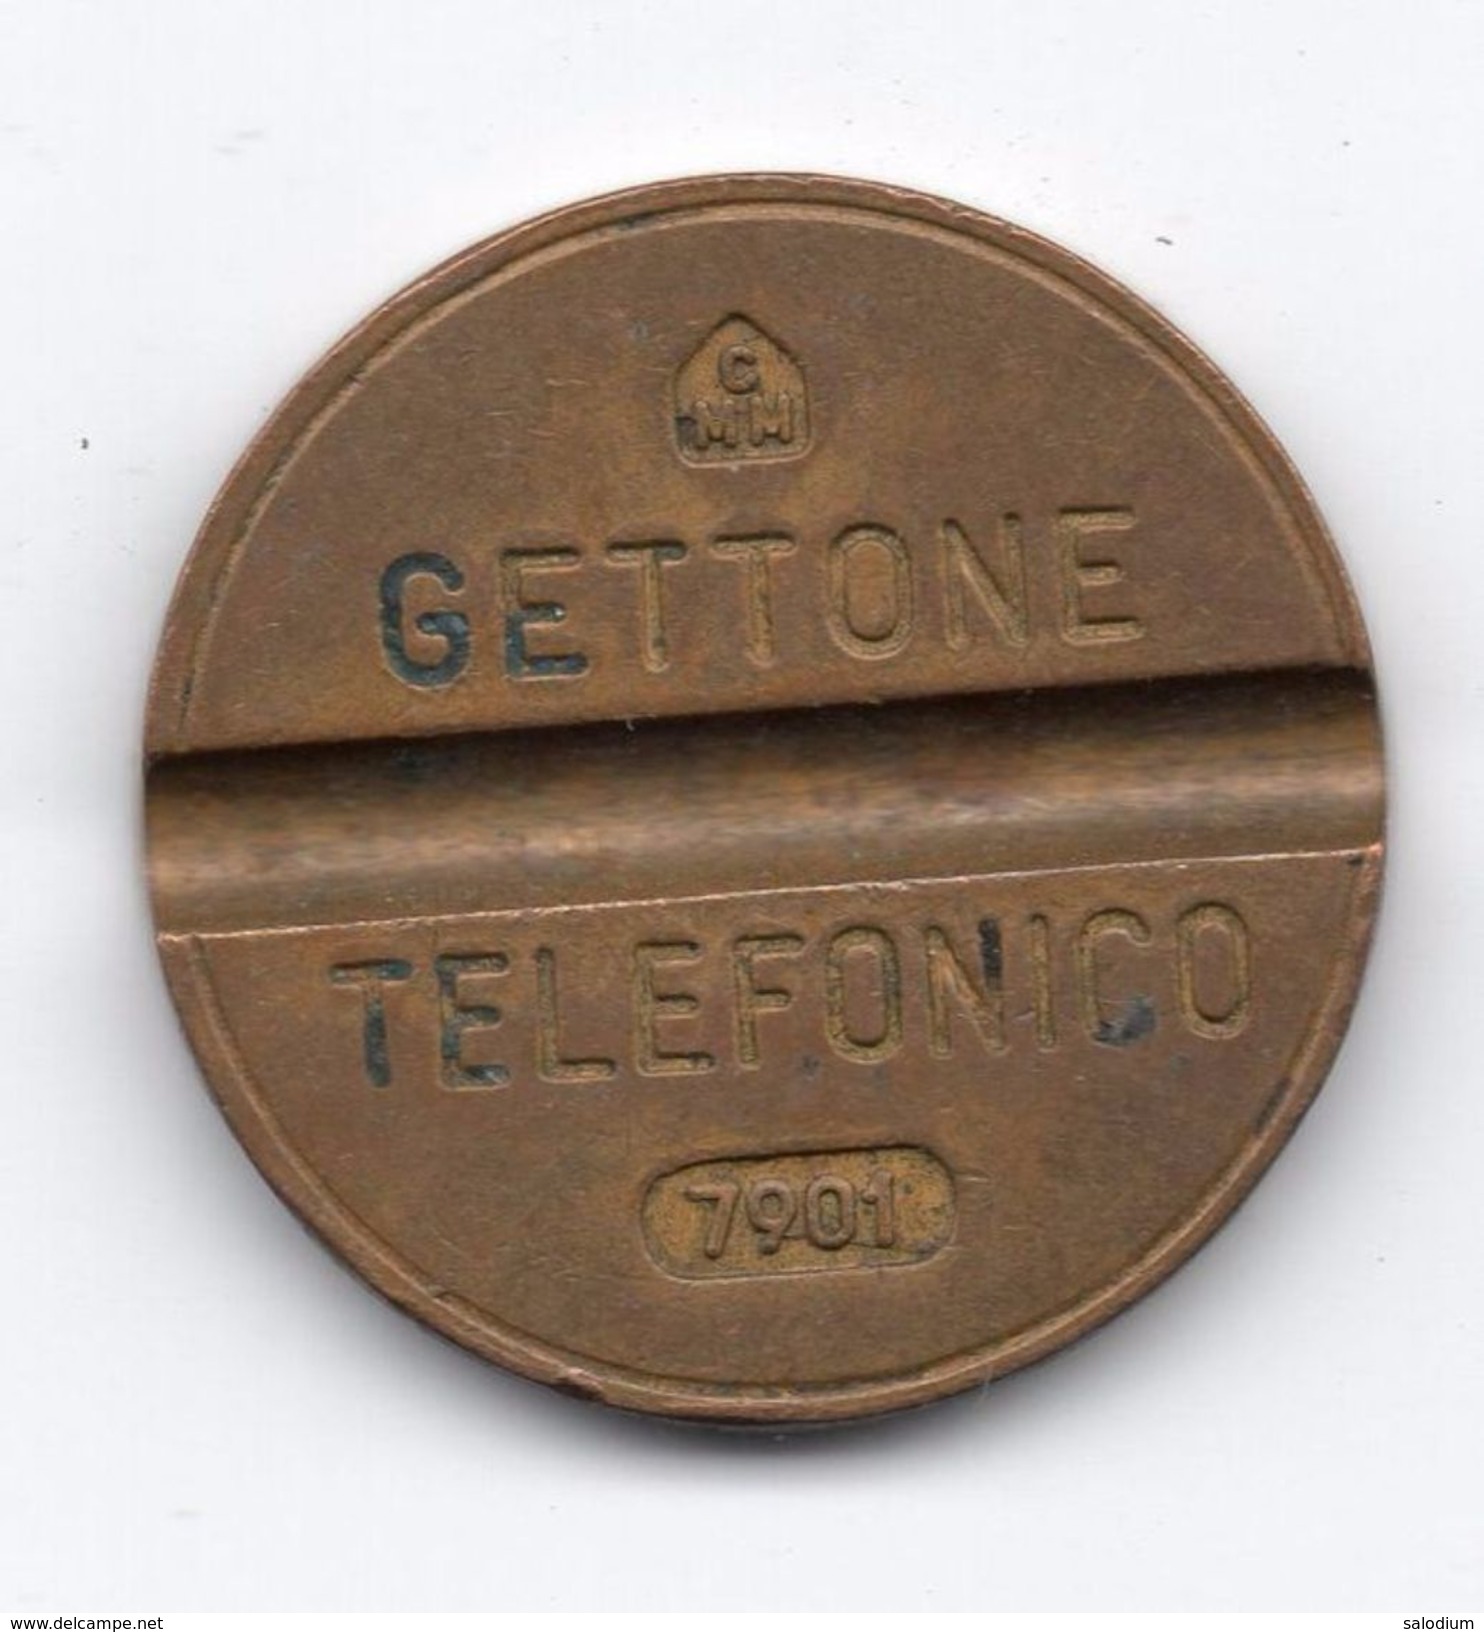 Gettone Telefonico 7901 Token Telephone - (Id-826) - Professionnels/De Société